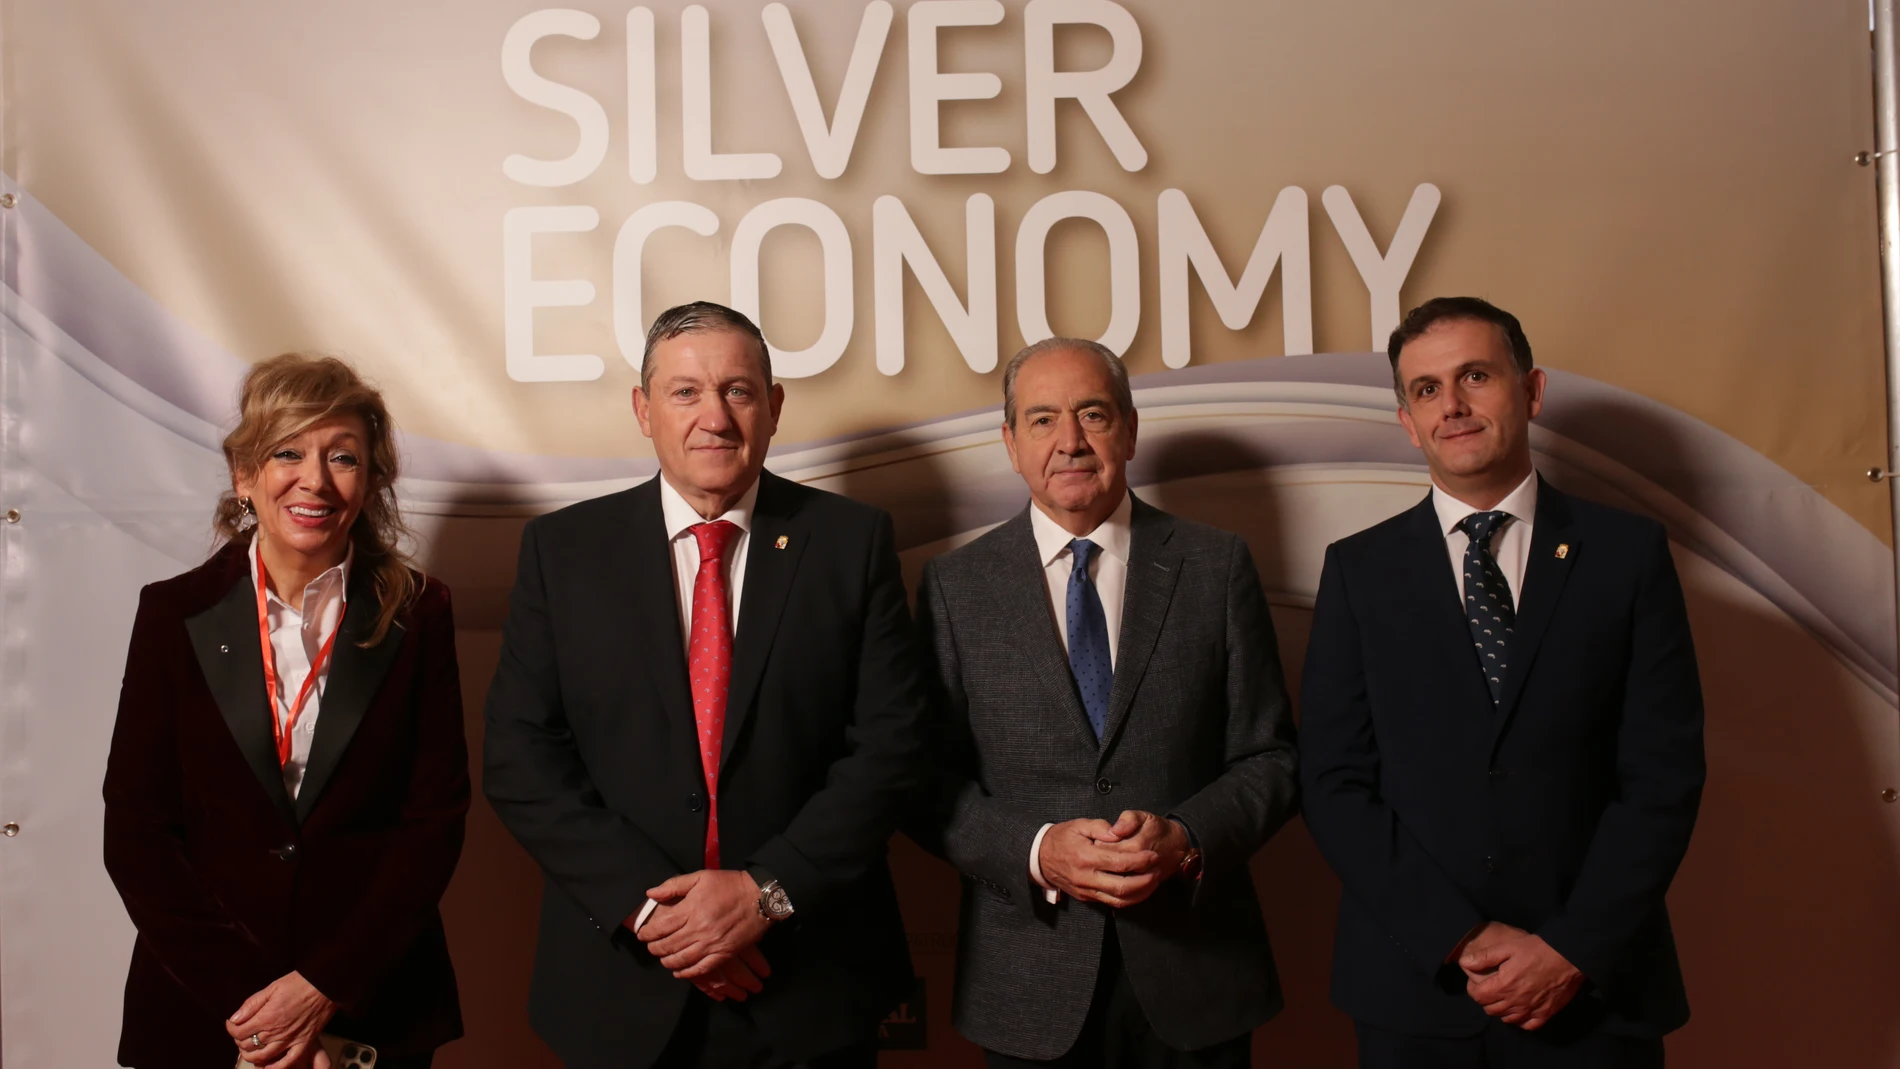 El presidente de la Diputación Provincial de Zamora, Javier Faúndez, inaugura el V Congreso Internacional Silver Economy, junto a Cipriano García, entre otros